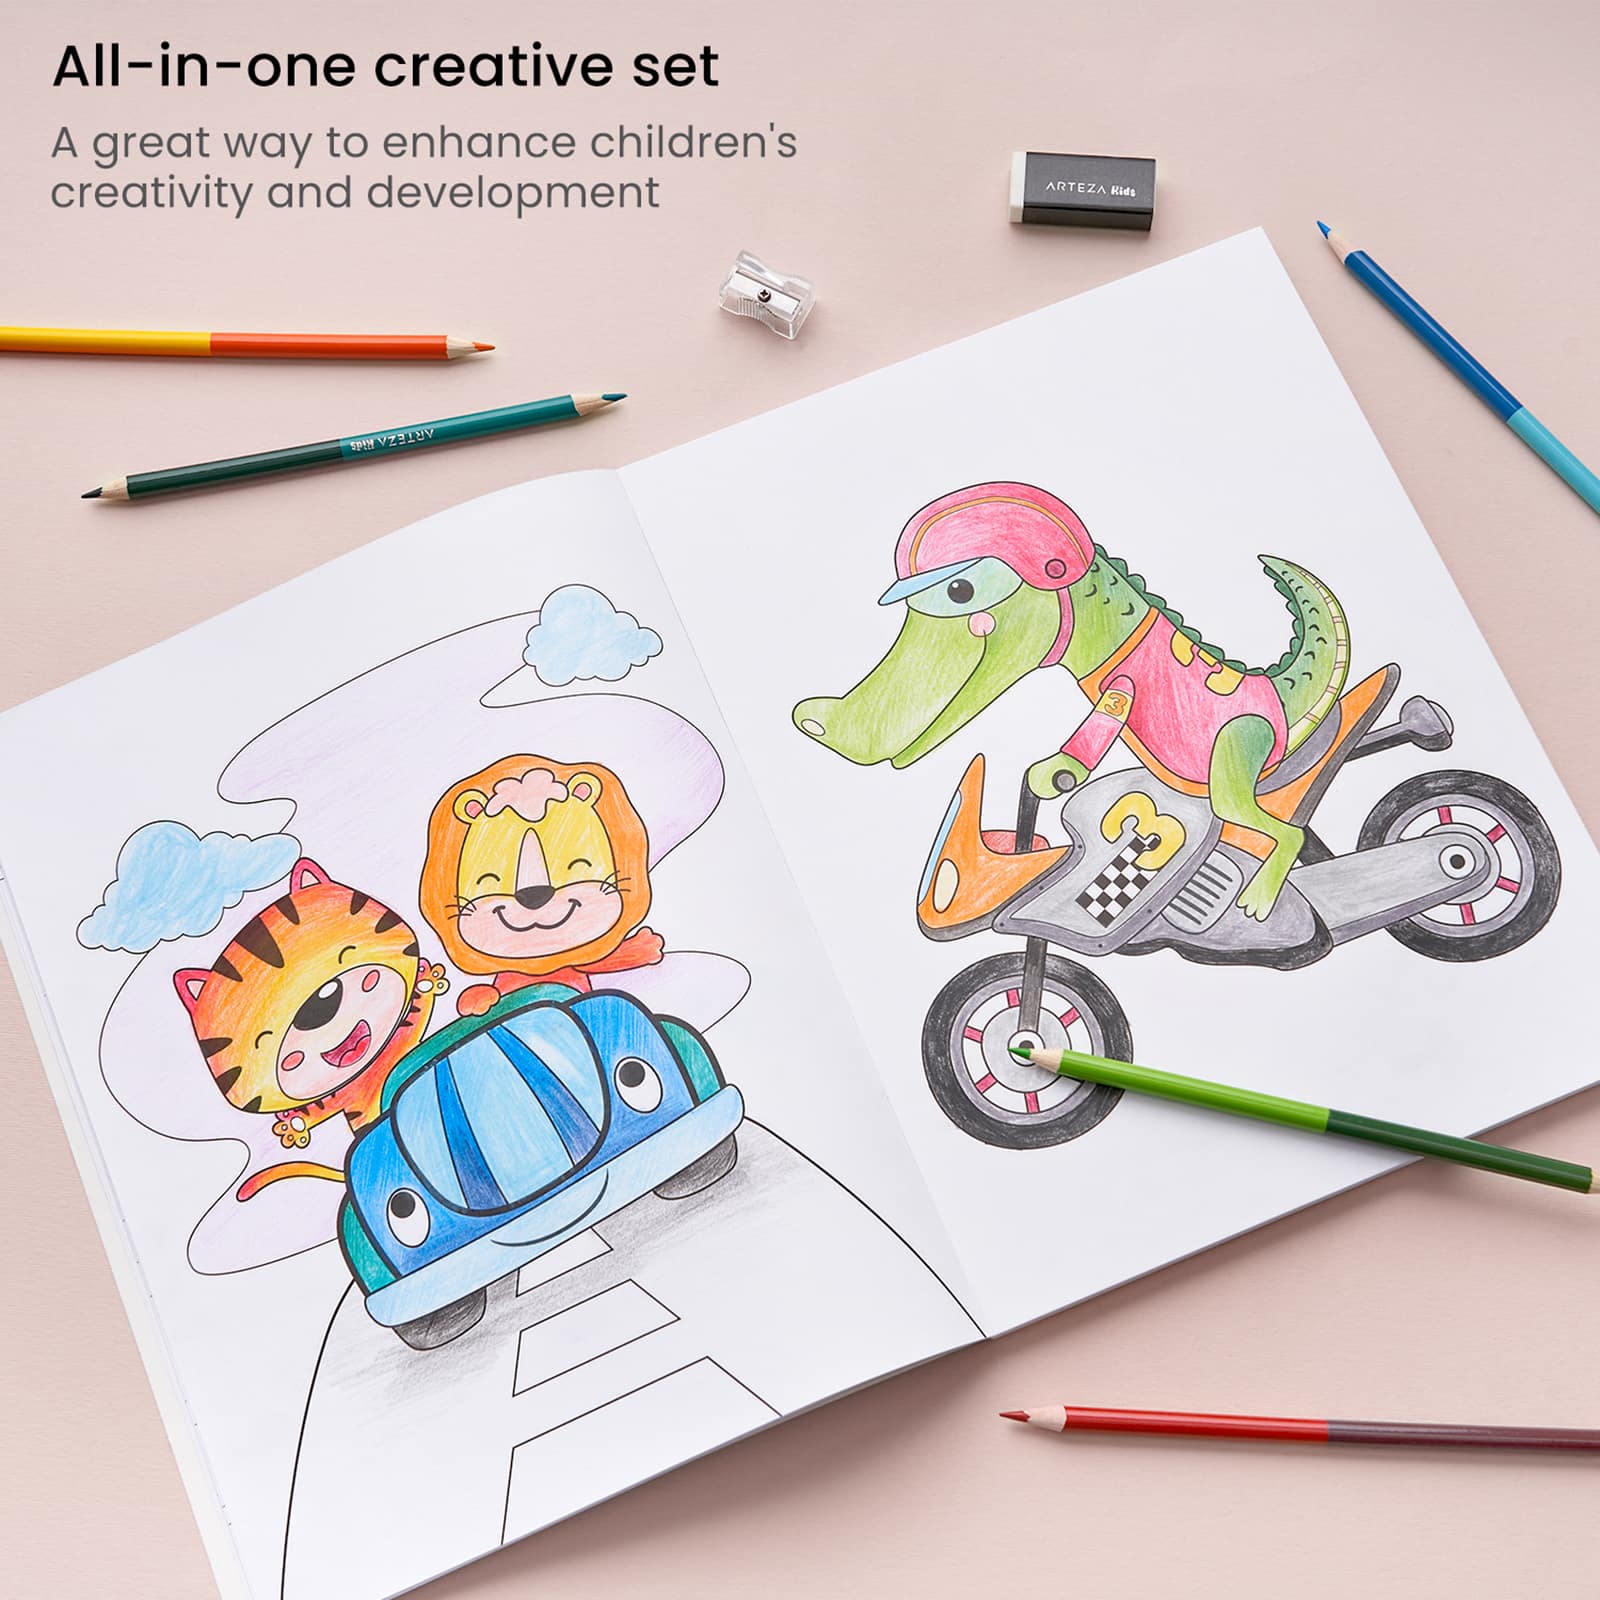 Arteza&#xAE; Kids Transportation Coloring Book Kit, 16 pcs